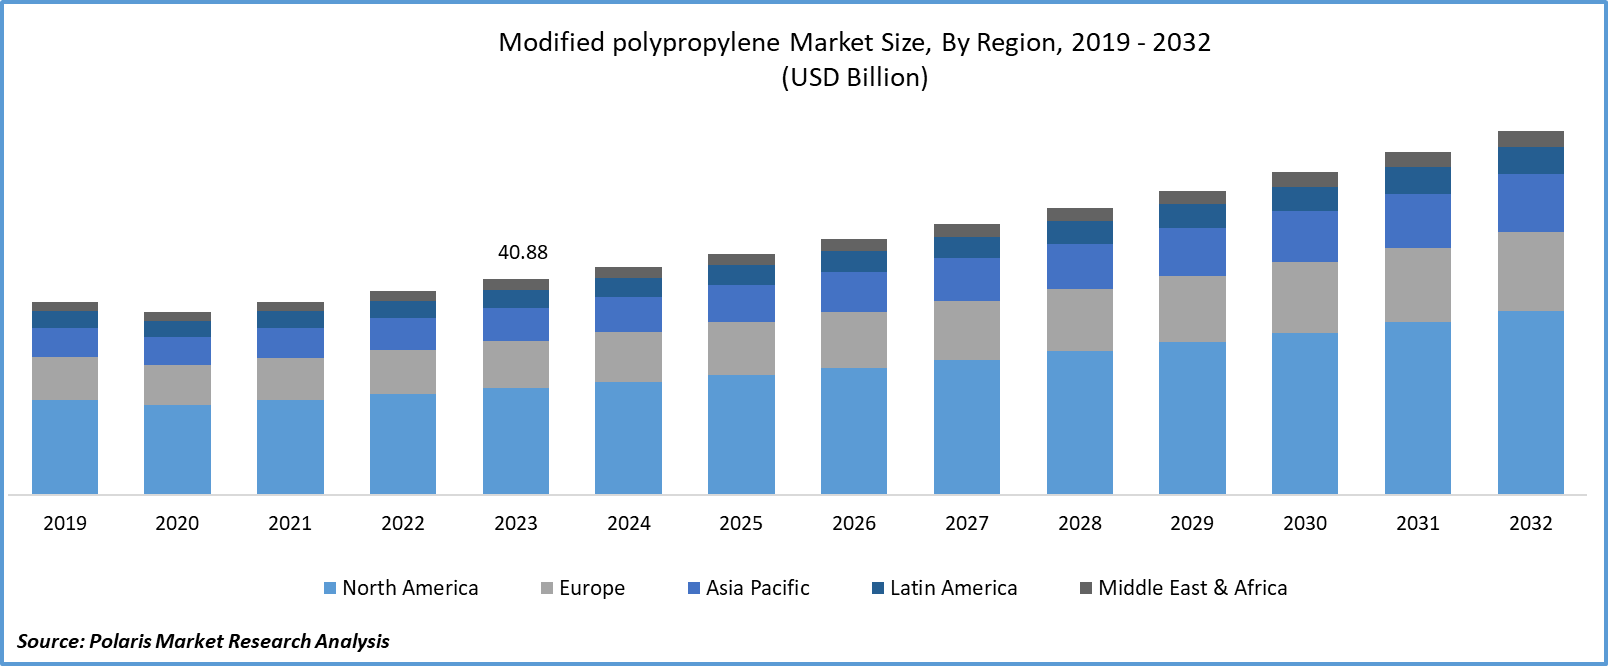 Modified Polypropylene Market Size